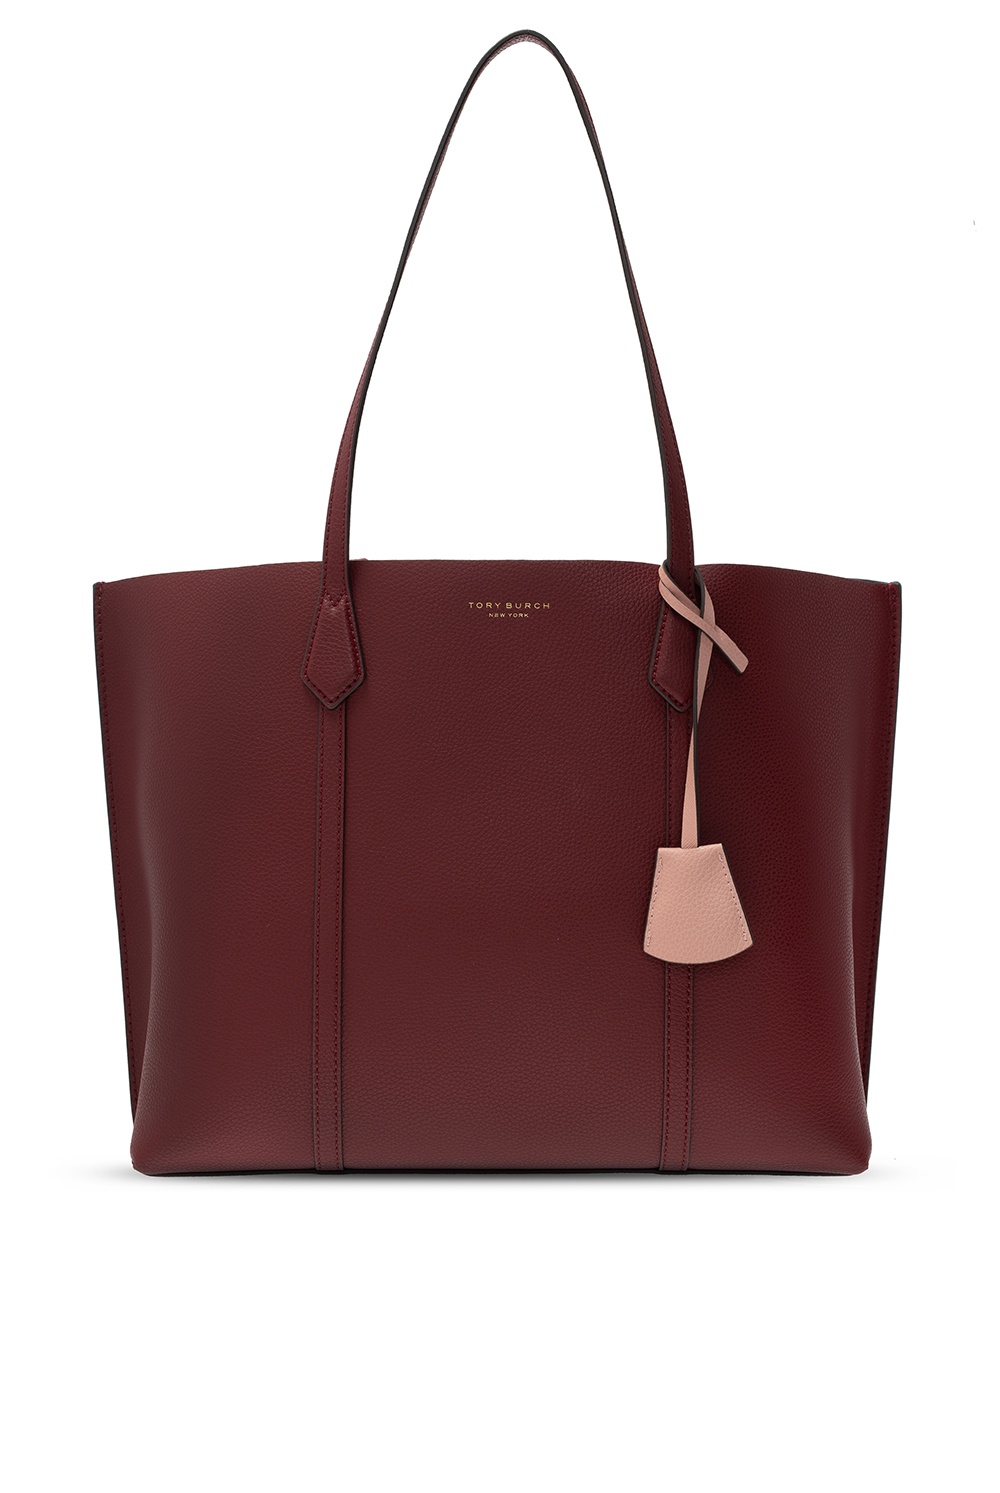 Women's Bags | Tory Burch 'Perry' shopper' bag | dqm chinook cooler bag |  IetpShops